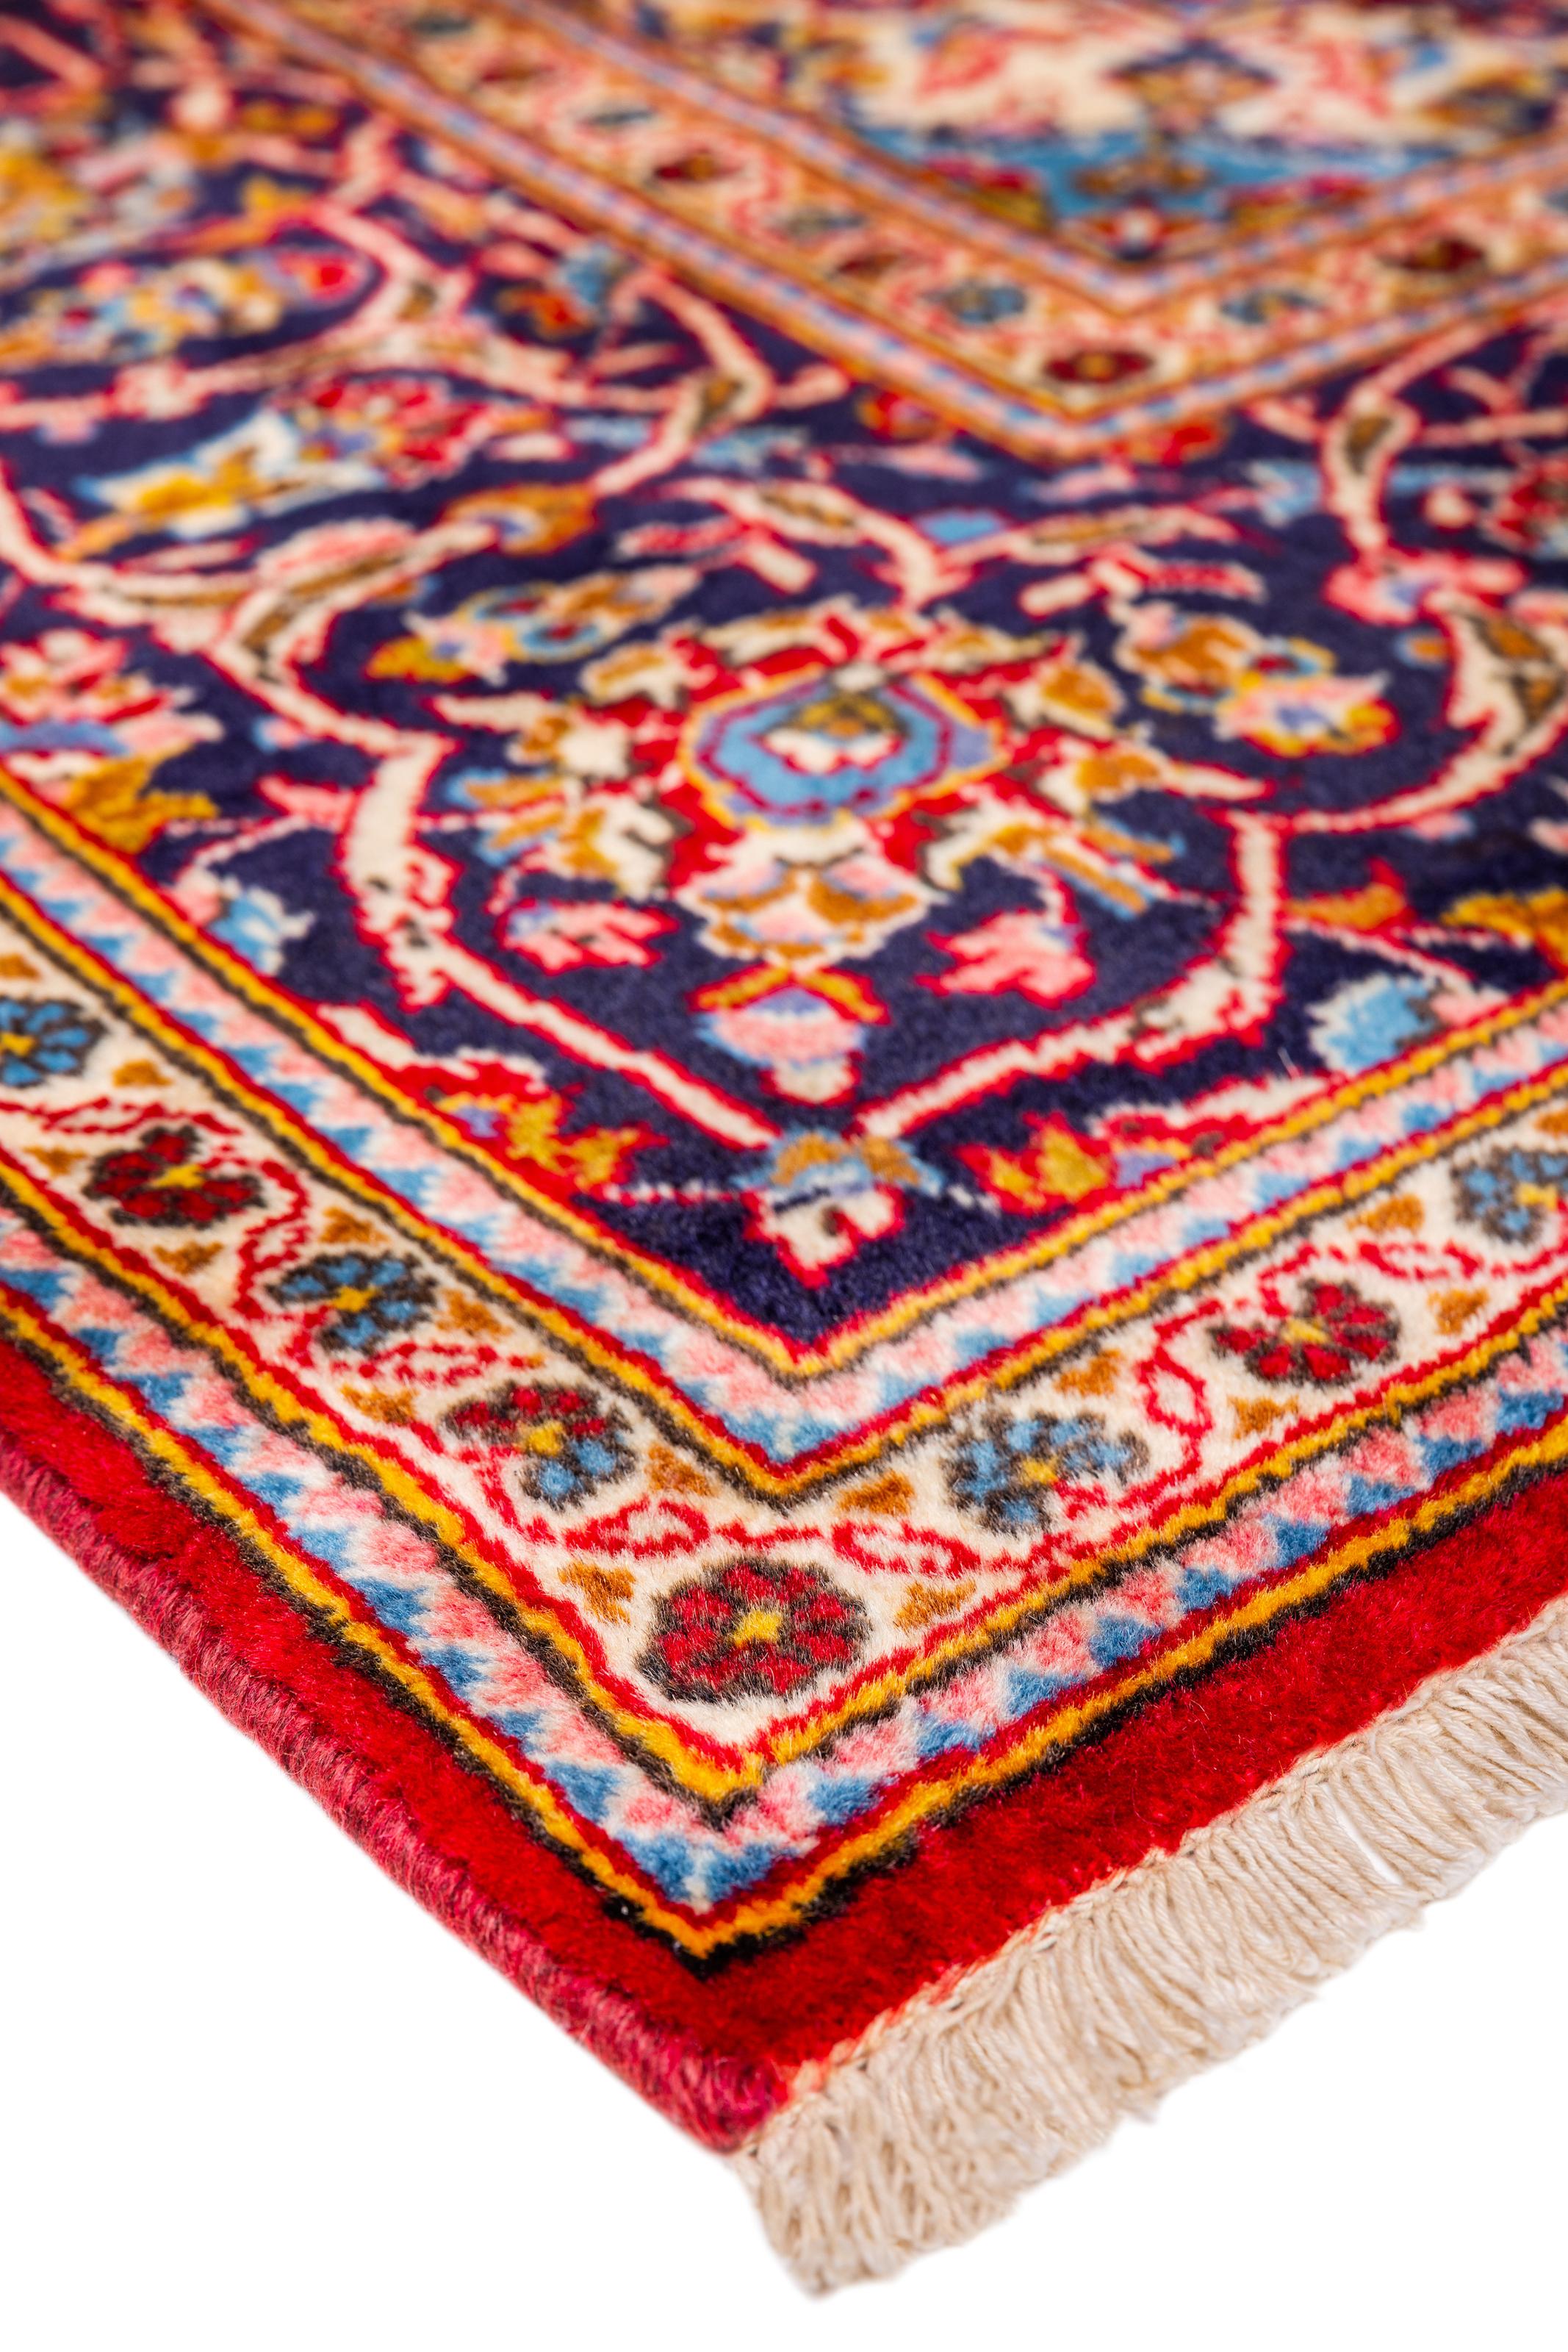 Réputés pour la richesse de leurs couleurs et l'intérêt de leurs motifs, les tapis persans sont fabriqués avec des laines et des soies entièrement naturelles. Leur beauté et l'impact qu'ils auront sur une maison sont infinis.

Dimensions exactes :